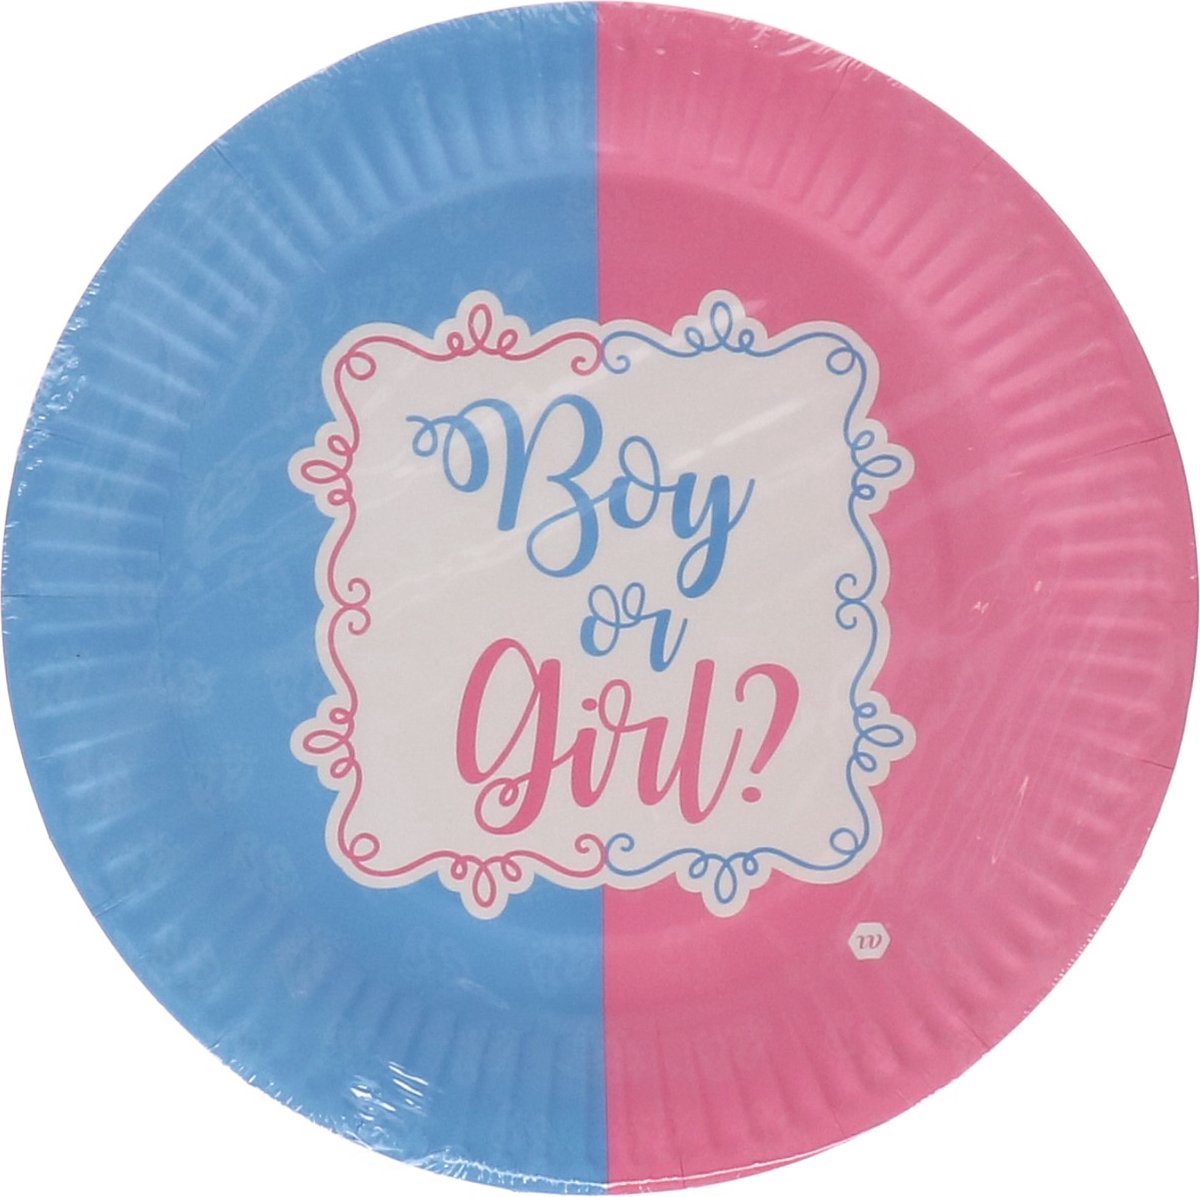 boy or girl bordjes - kartonnen bordjes - wegwerp borden - baby shower borden - 8stuks